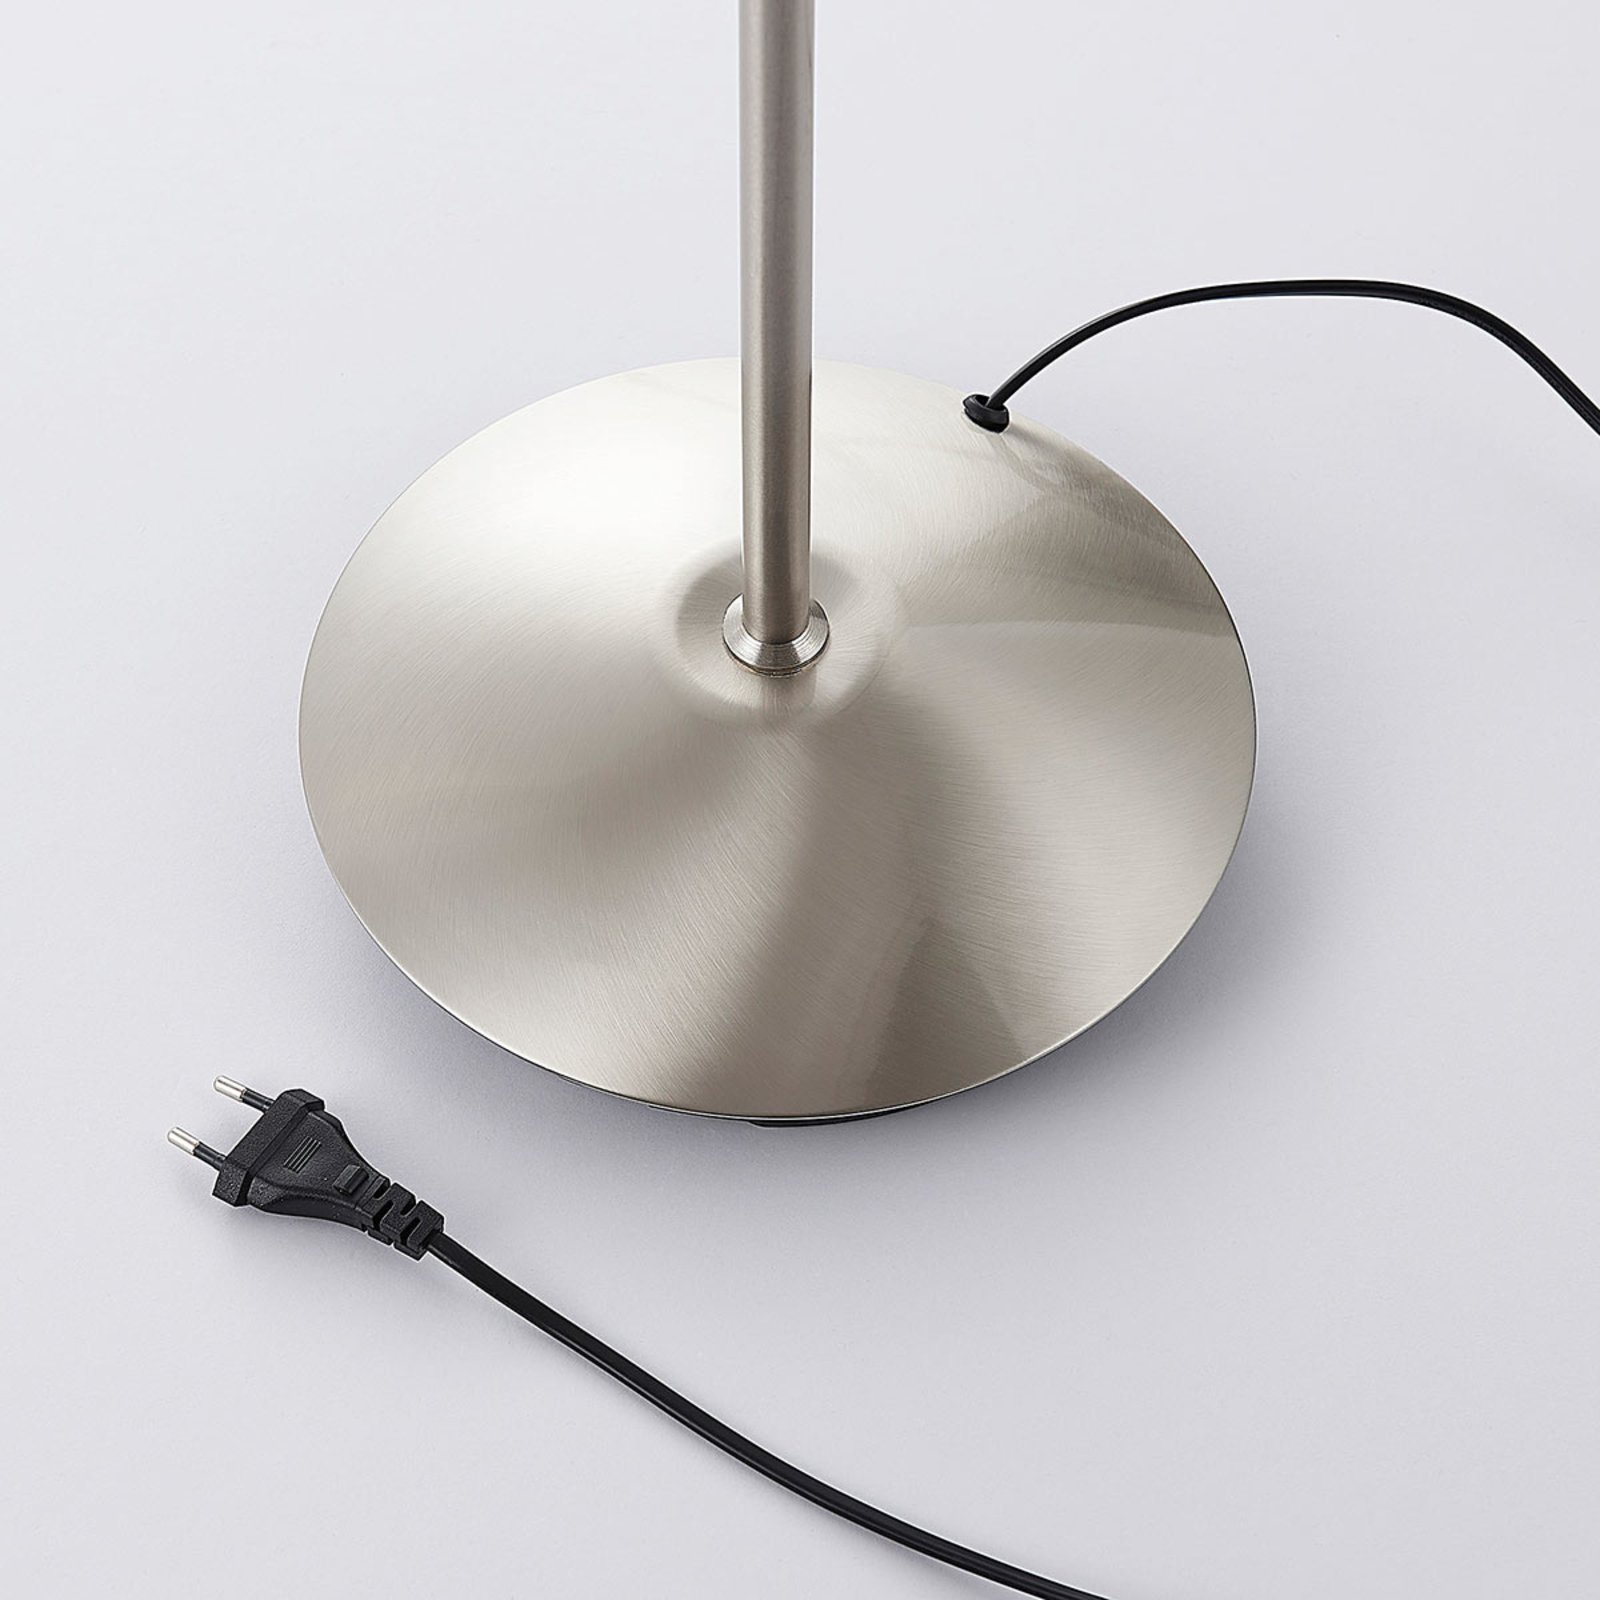 Vloerlamp Gwendolin, nikkelkleurig, 1-lamps